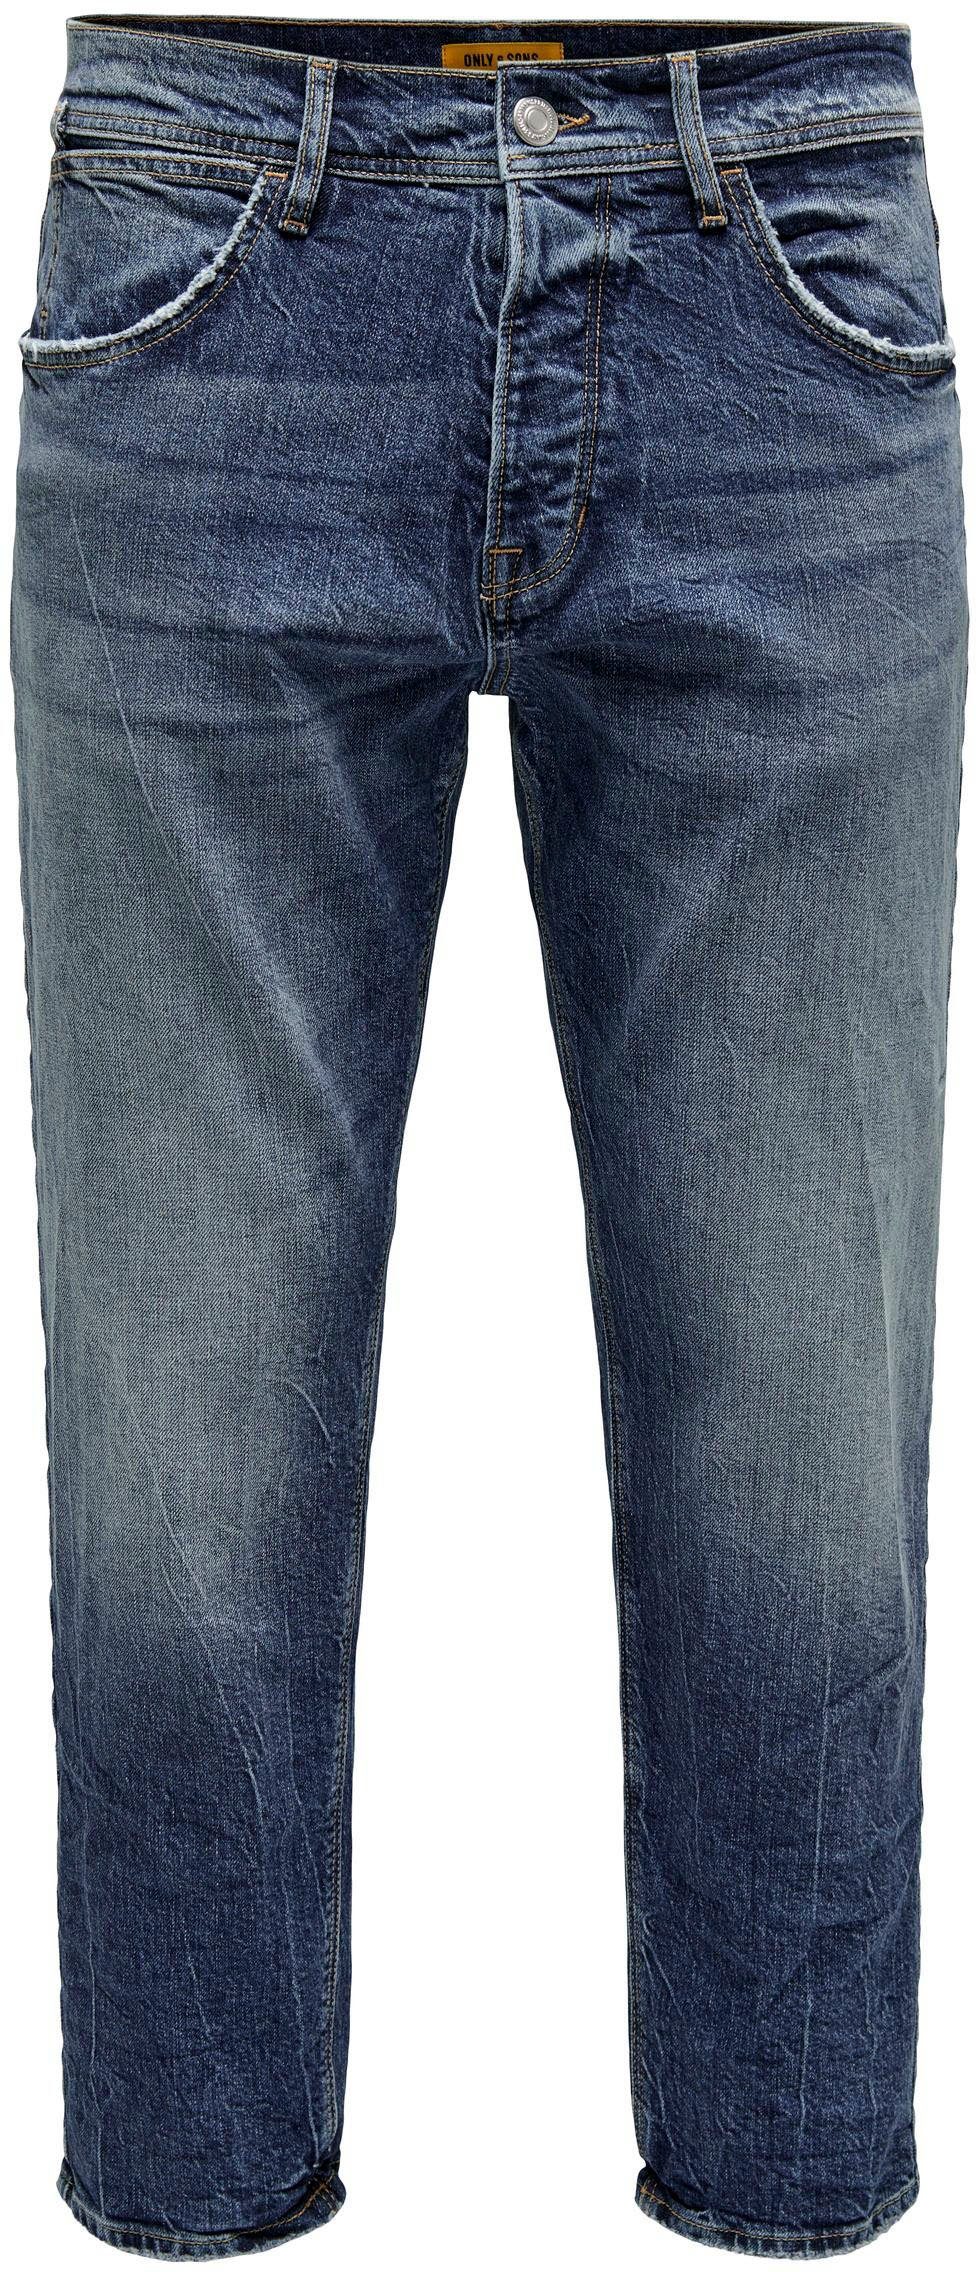 ONLY & SONS 5-Pocket-Jeans ONSAVI COMFORT L. BLUE 4934 JEANS NOOS dark medium blue | Stretchjeans